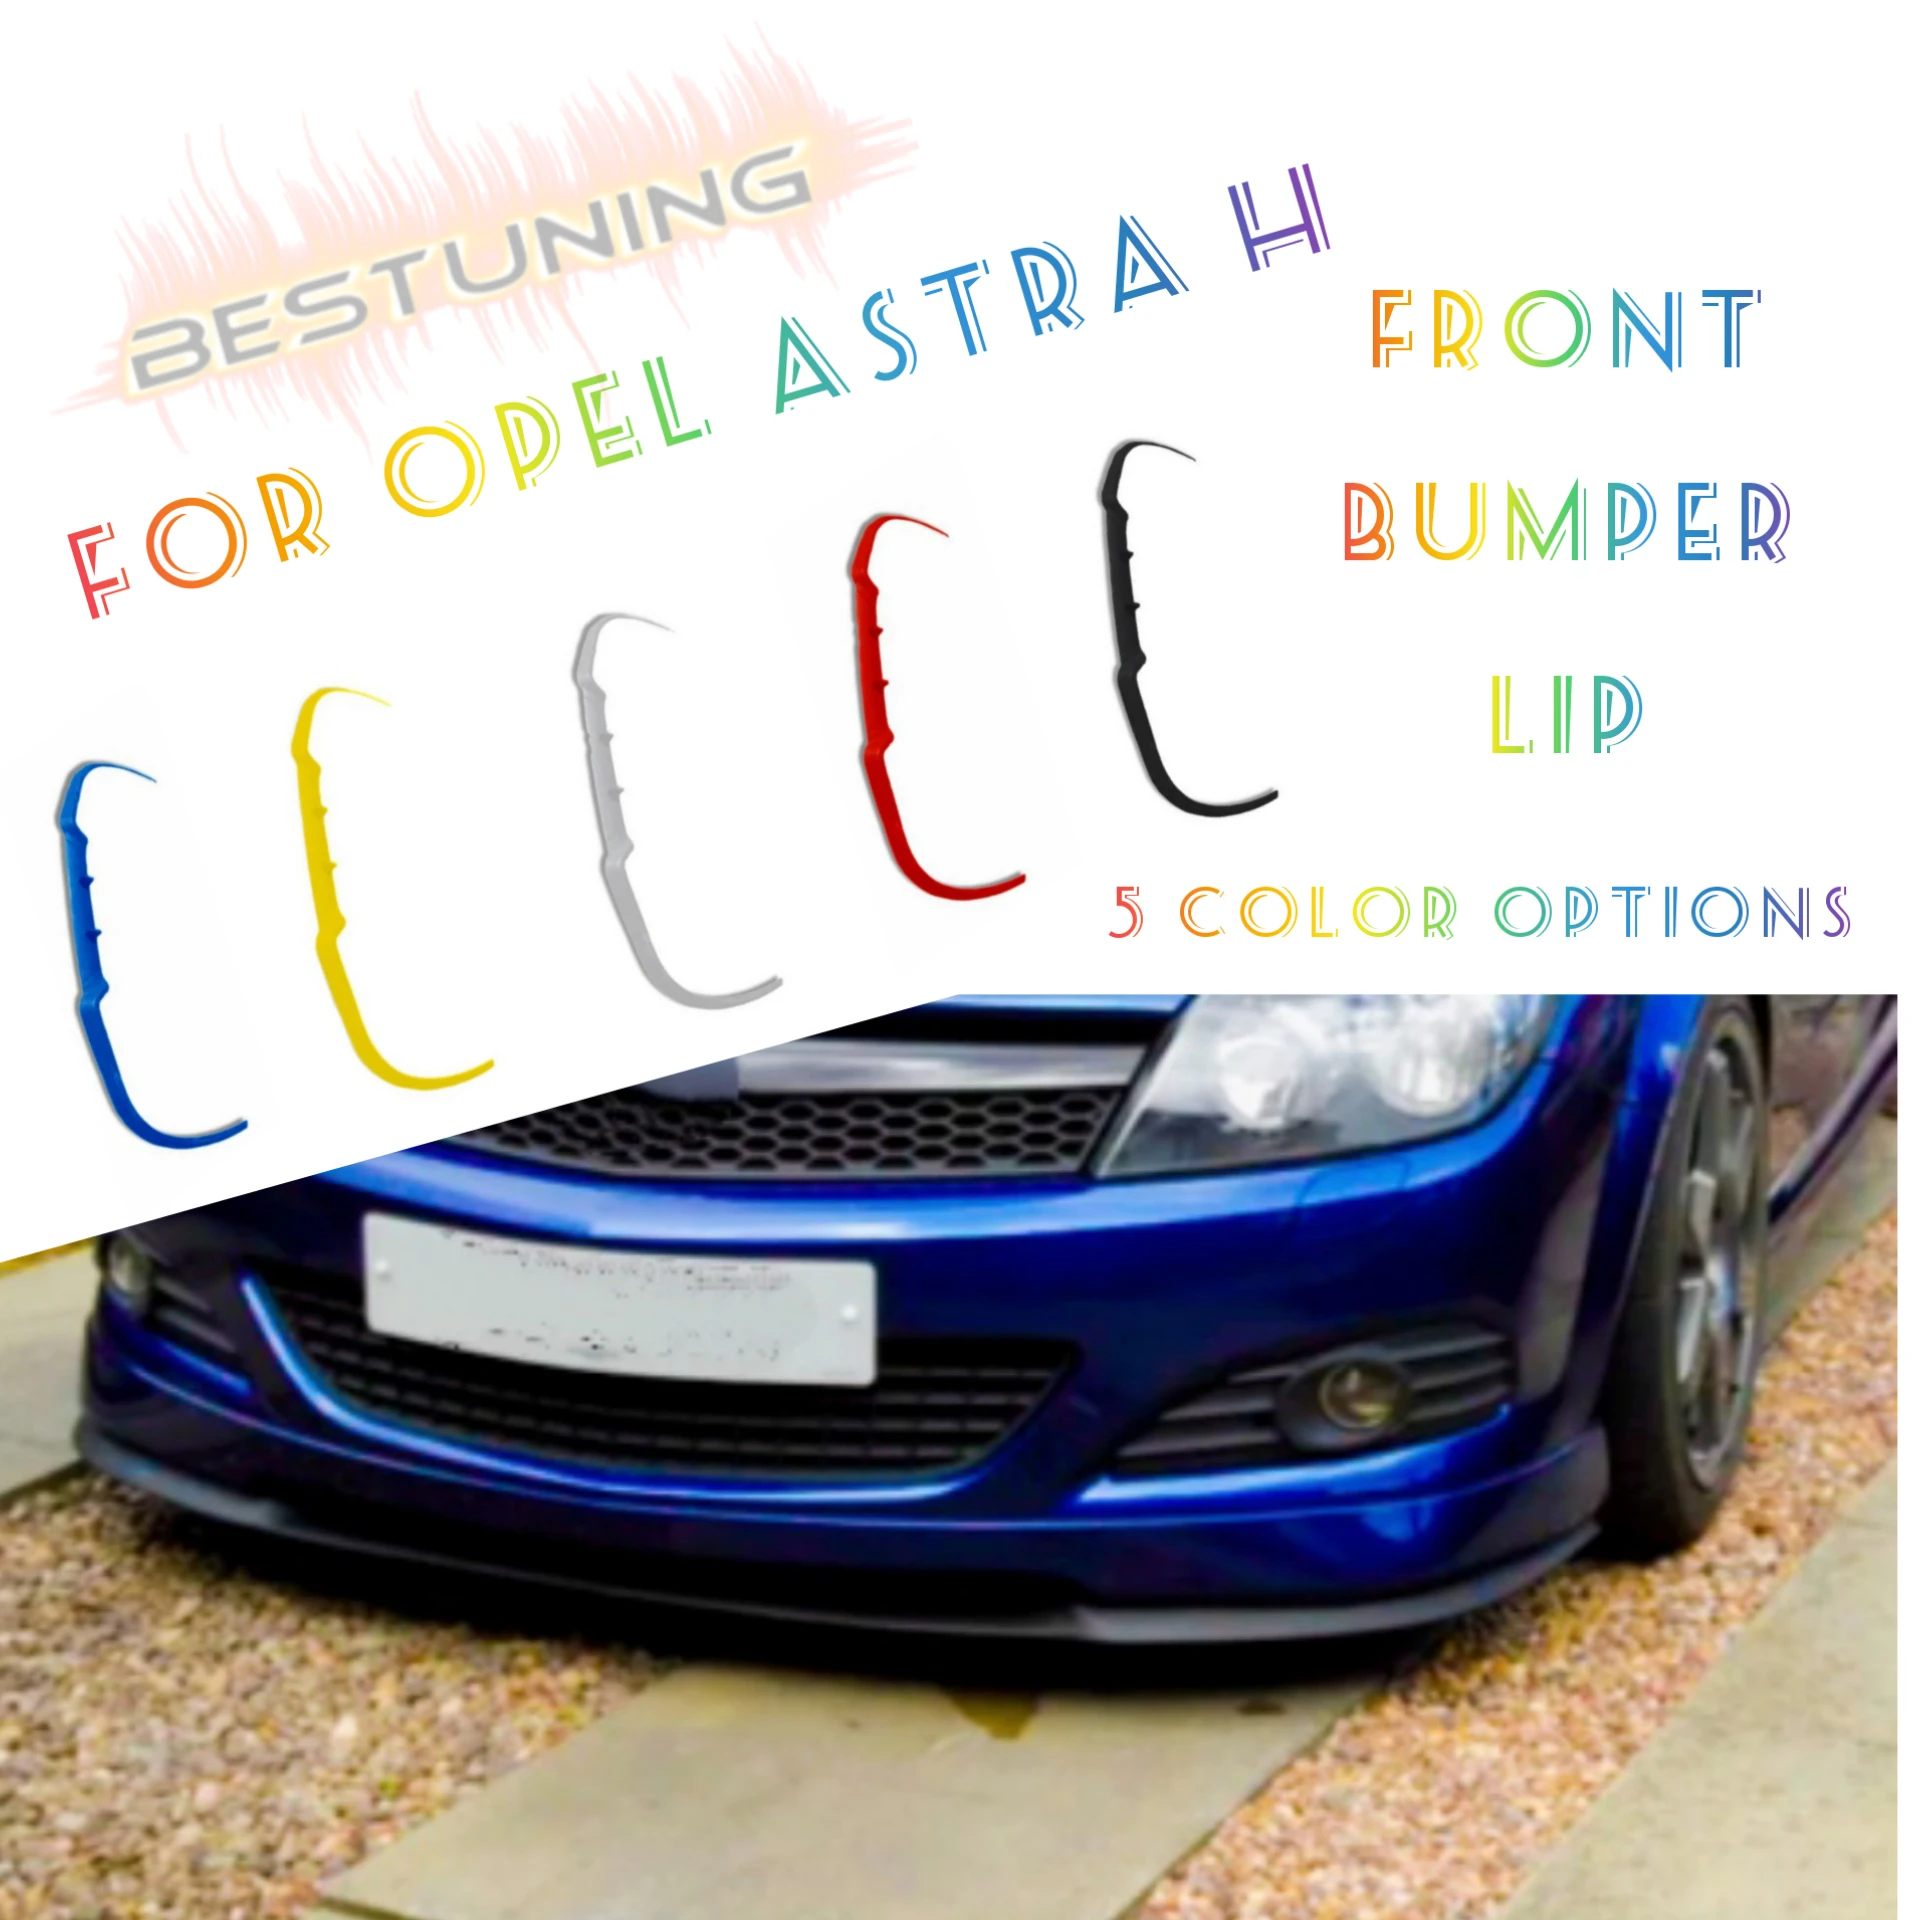 For Opel Corsa C CUPRA R Front Bumper Lip Universal 3pcs Diffuser Black  Bumper Lip Spoiler Body Kit, Auto Car Tuning Accessories - AliExpress